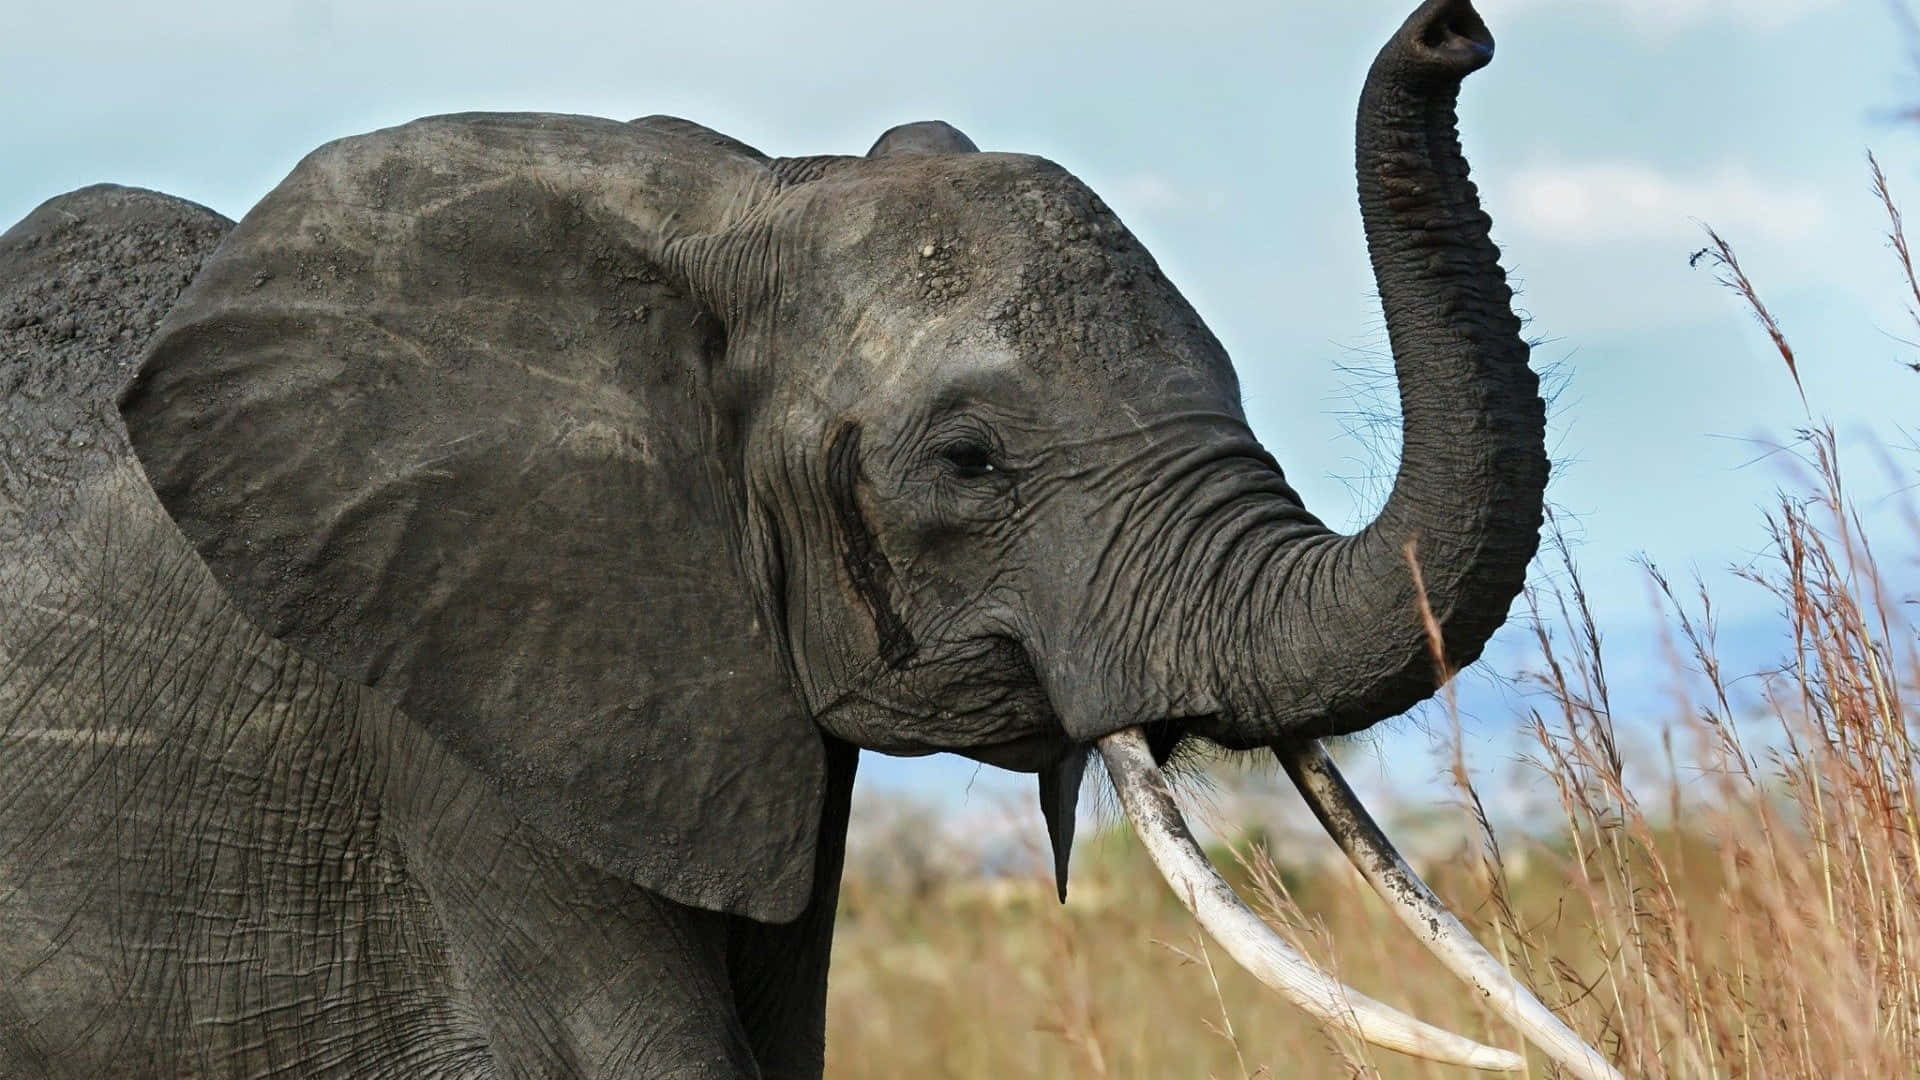 Enmajestætisk Afrikansk Elefant Står Alene I Et Stort Åbent Rum.